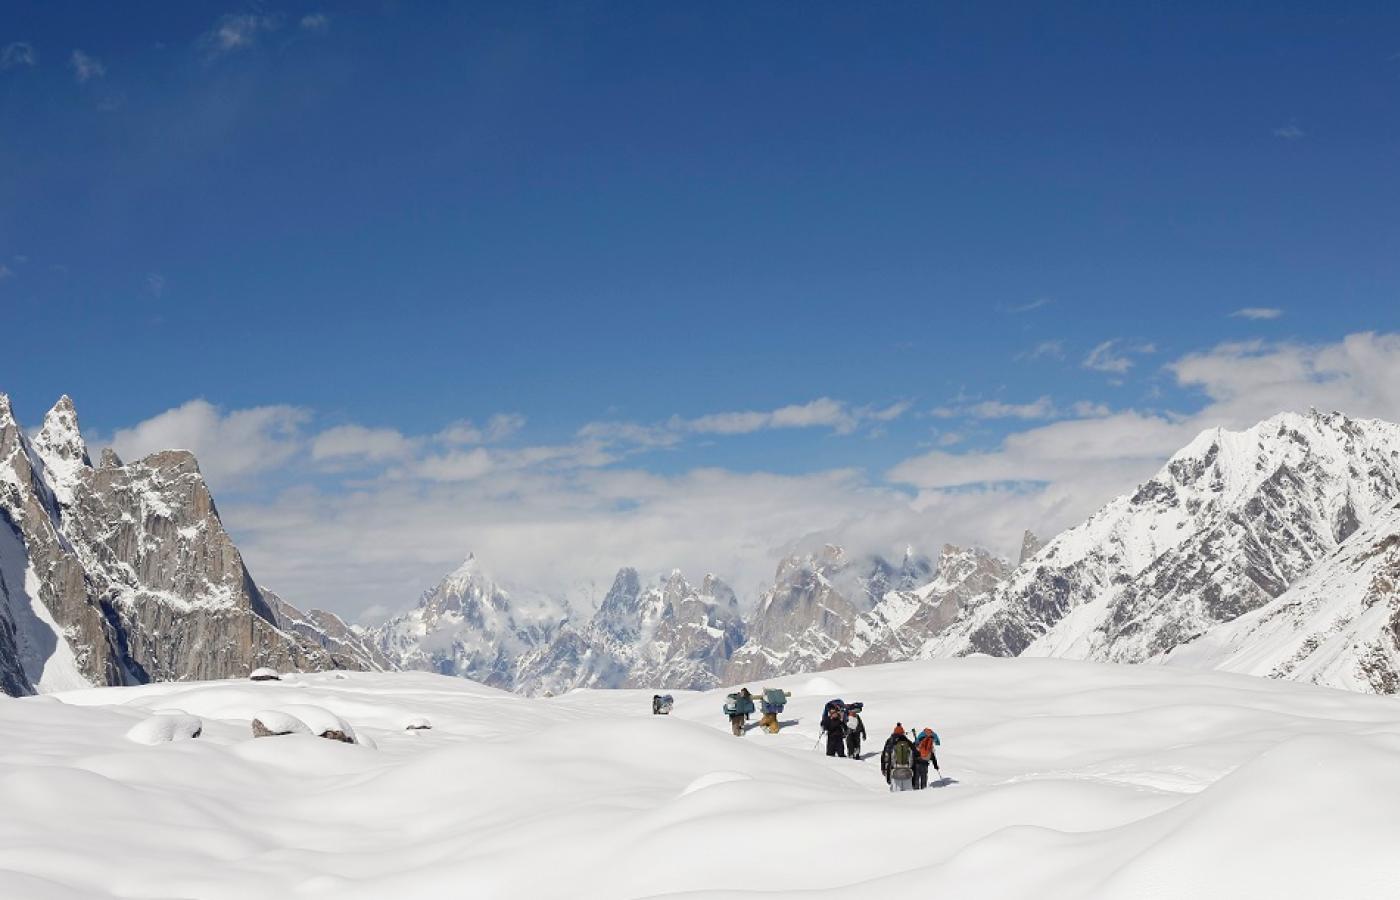 Ogłoszenie decyzji o powrocie na K2 poprzedziły zapewnienia, że wnioski z poprzednich wypraw zostały wyciągnięte.